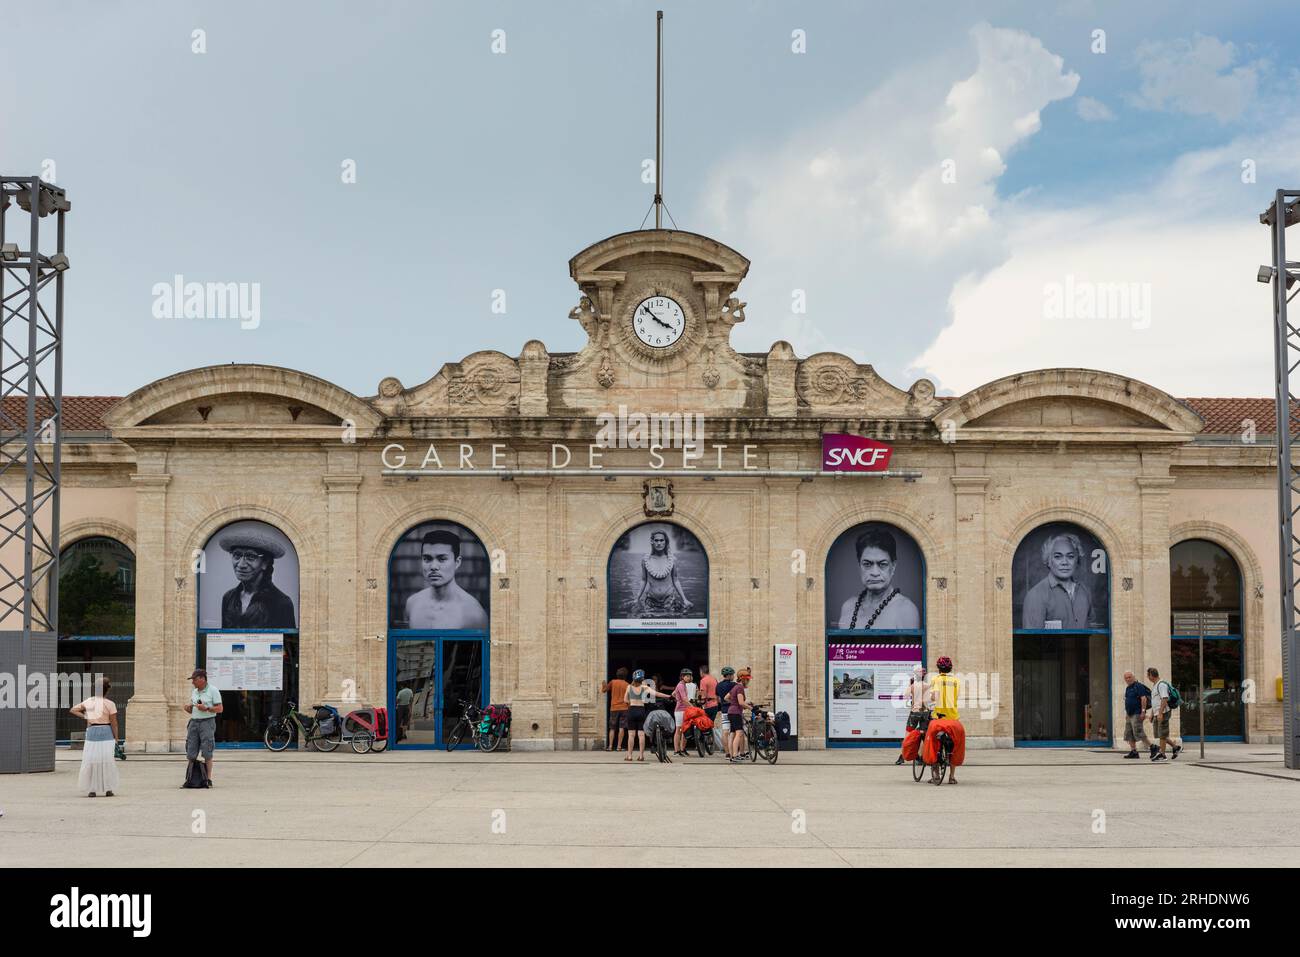 Gare de sète Banque de photographies et d'images à haute résolution - Alamy